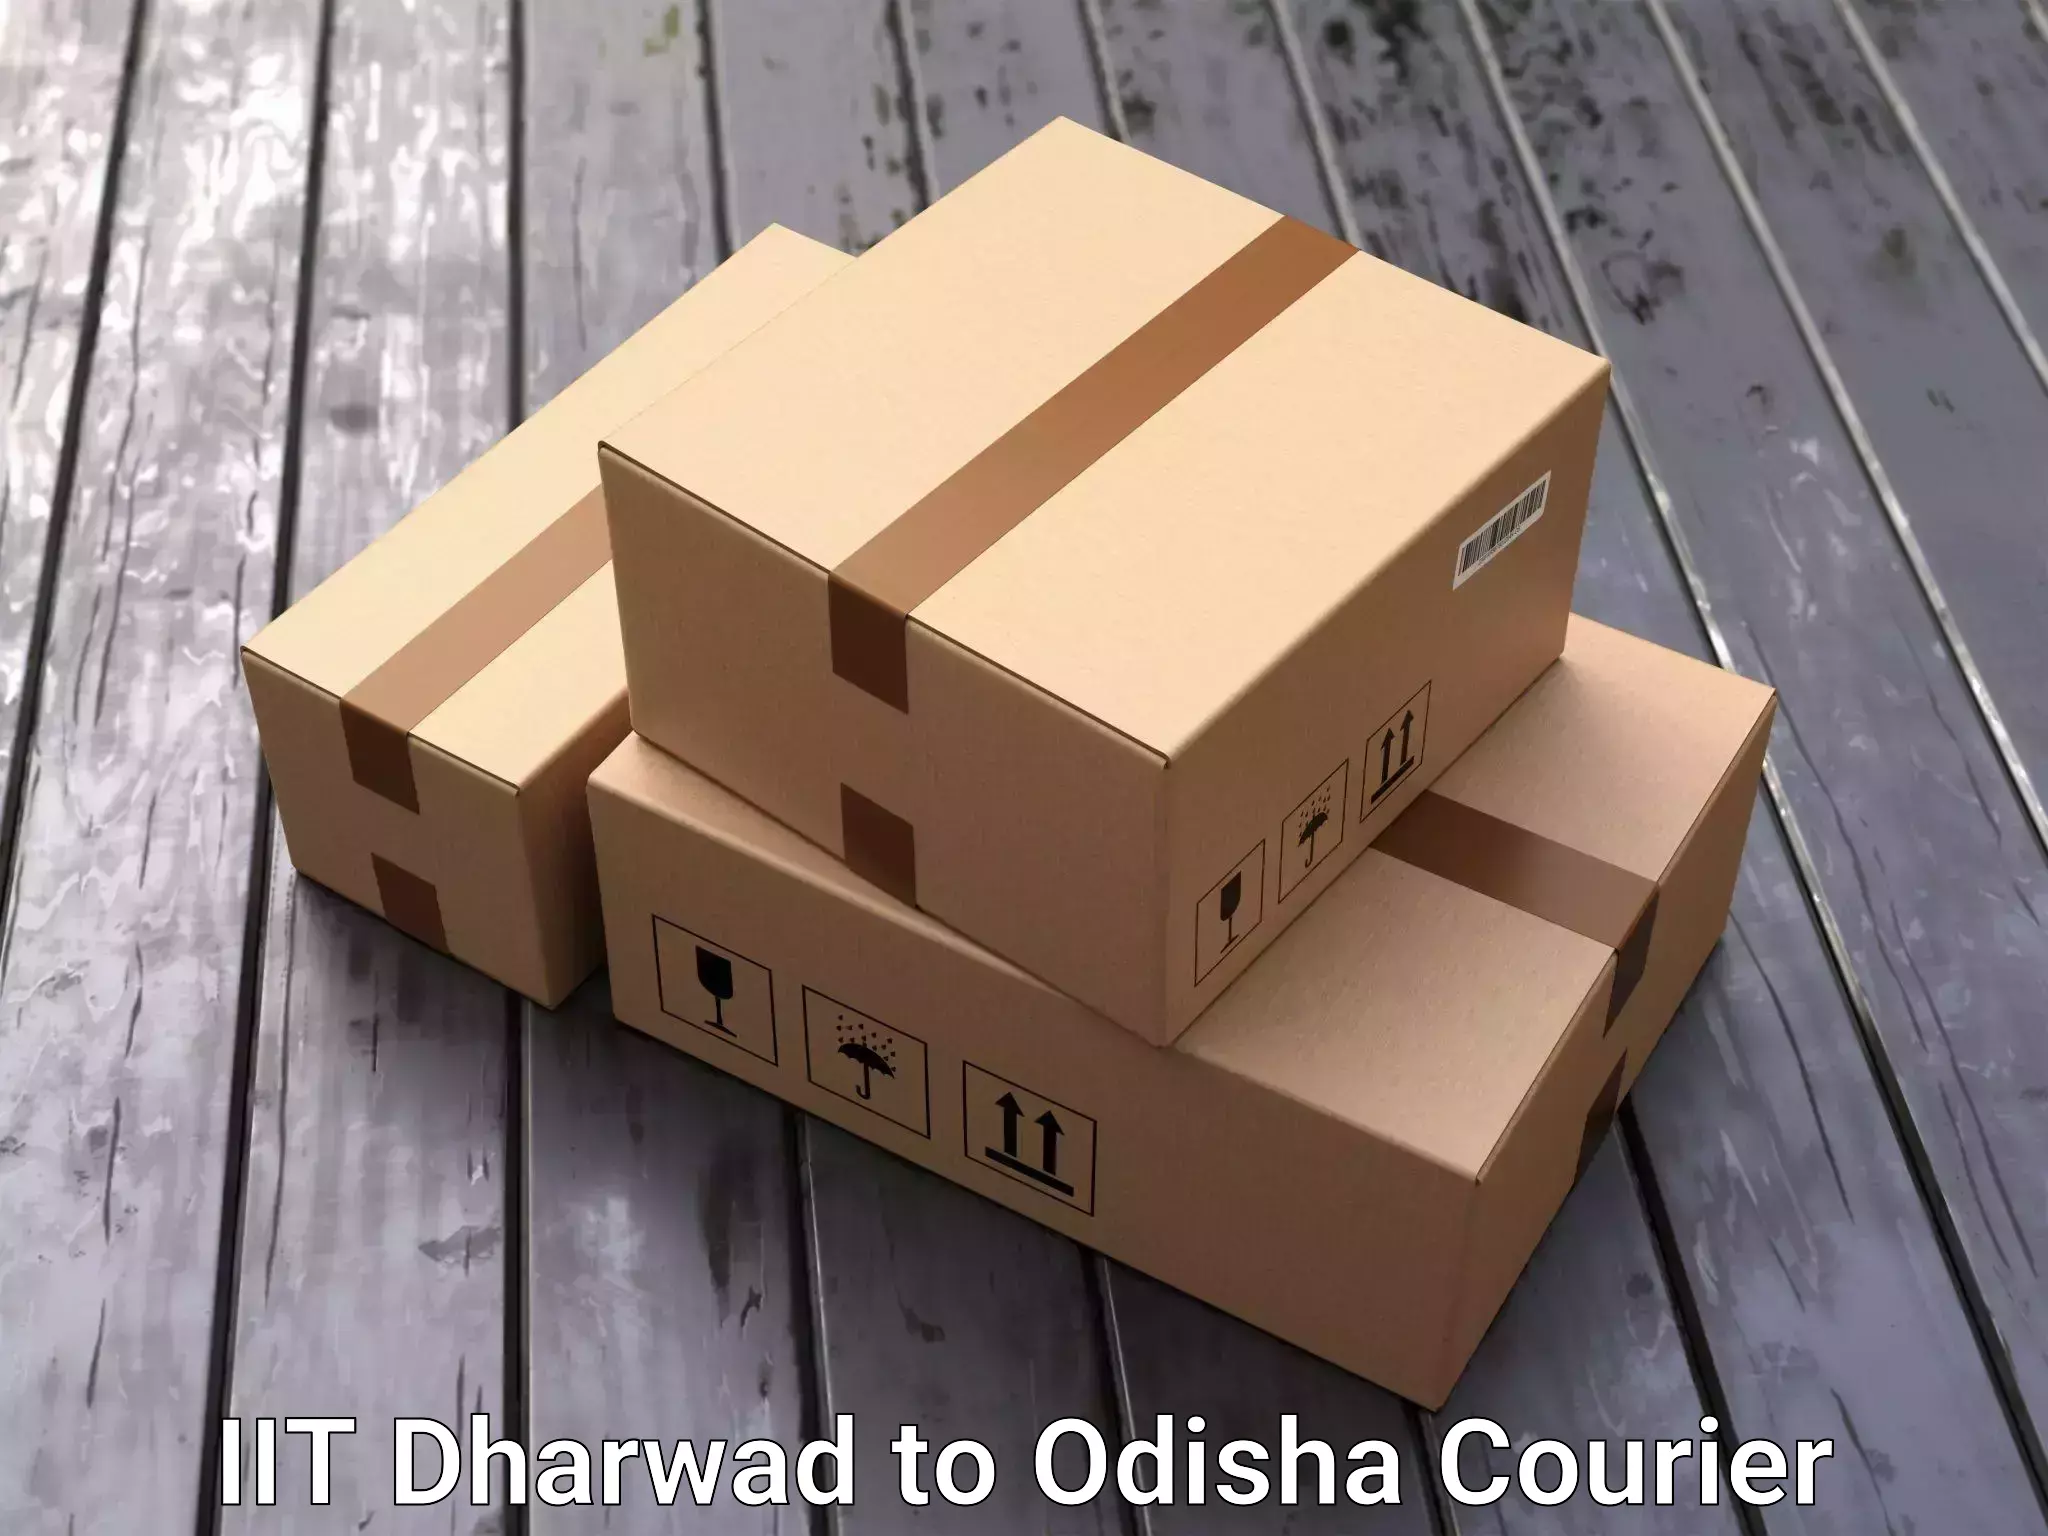 Home moving experts IIT Dharwad to Parlakhemundi